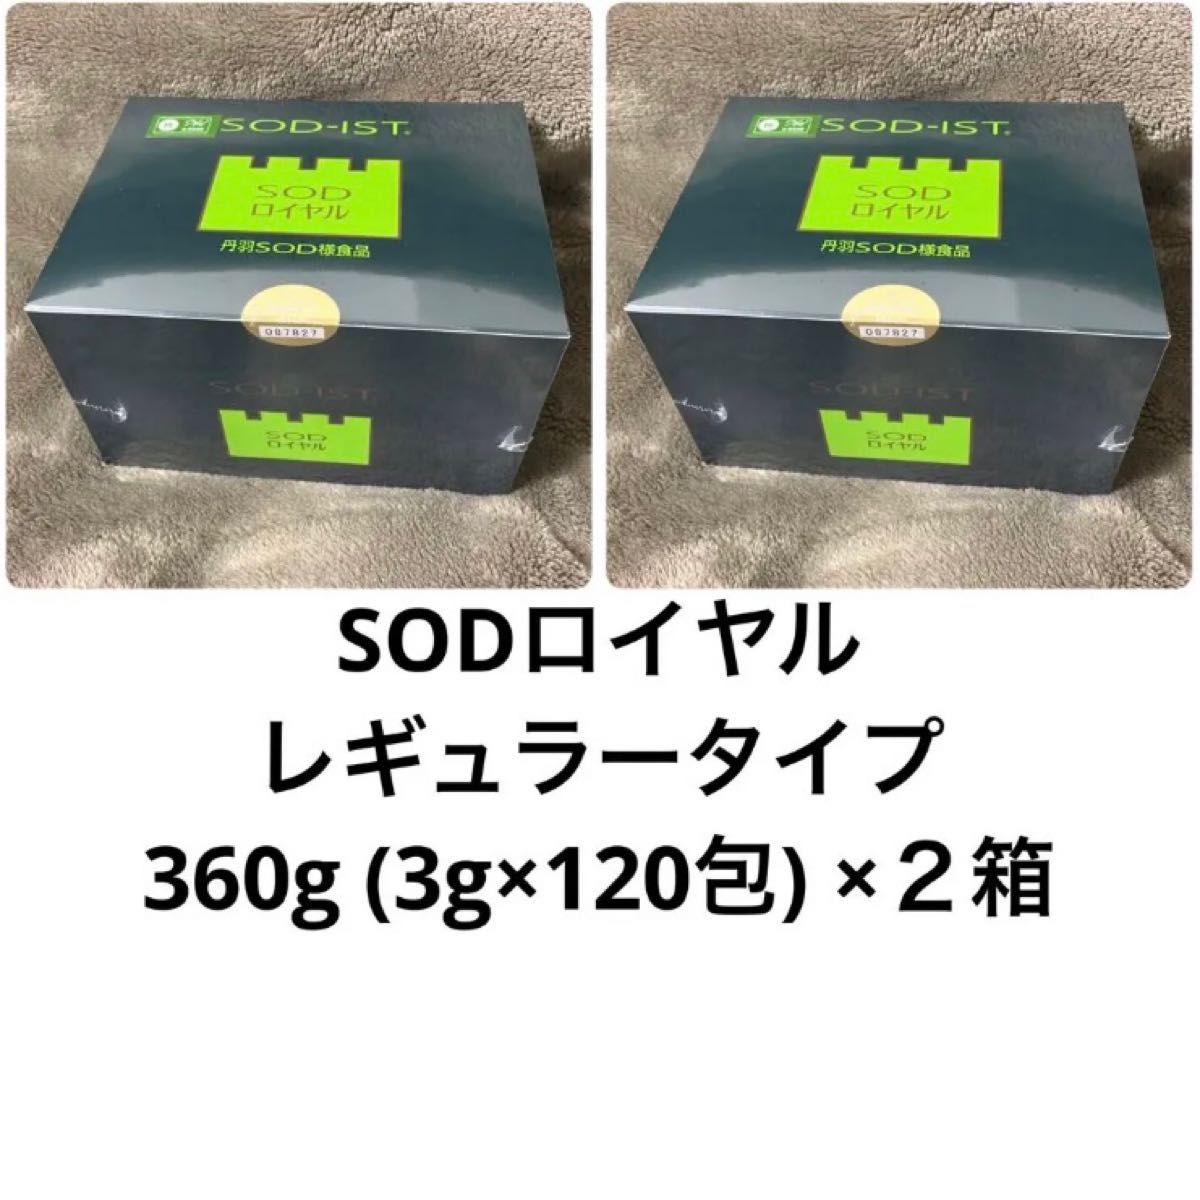 ☆決算特価商品☆ 丹羽SOD ニワナ Niwana レギュラー 120包 6箱セット